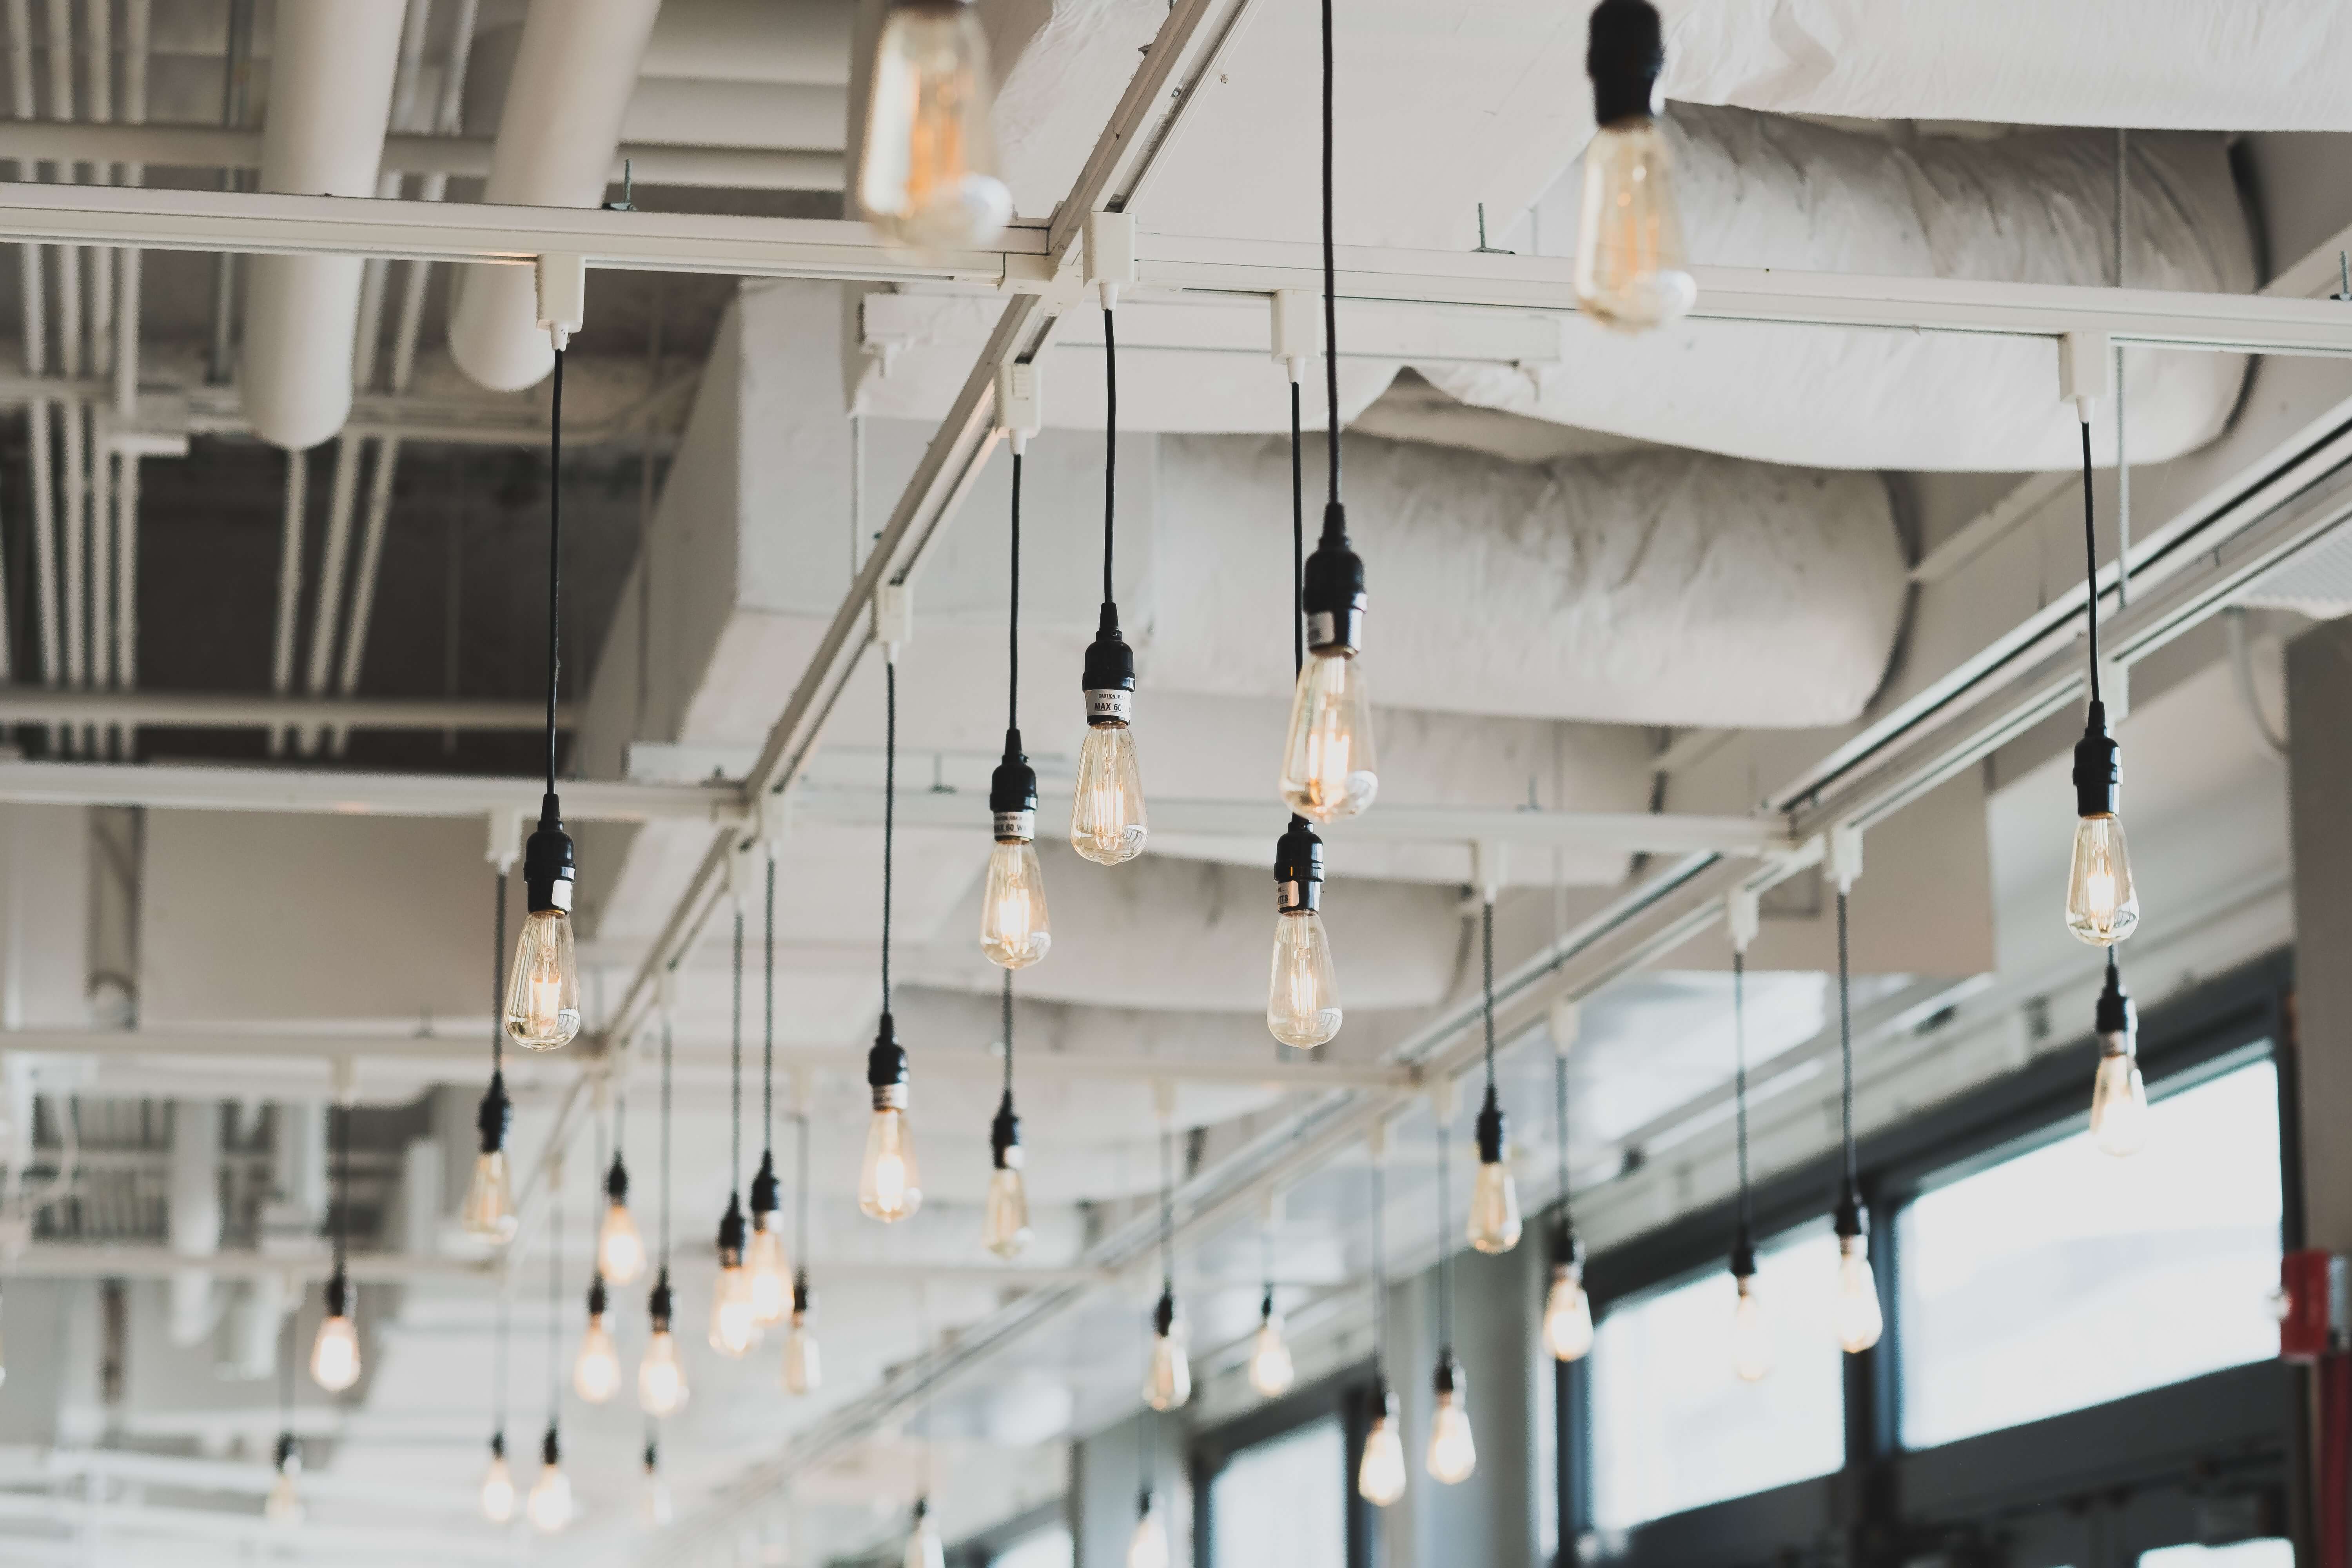 Không gian quán cafe của bạn sẽ thật độc đáo và hấp dẫn khi trang trí bằng những chiếc đèn thả tinh tế. Với hàng nghìn mẫu mã và kiểu dáng đa dạng, chúng mang đến cảm hứng cho việc sáng tạo và tự do thể hiện phong cách của khách hàng. Hãy trang trí quán của mình bằng những chiếc đèn thả đẹp mắt và tạo ra không gian đúng ý bạn.